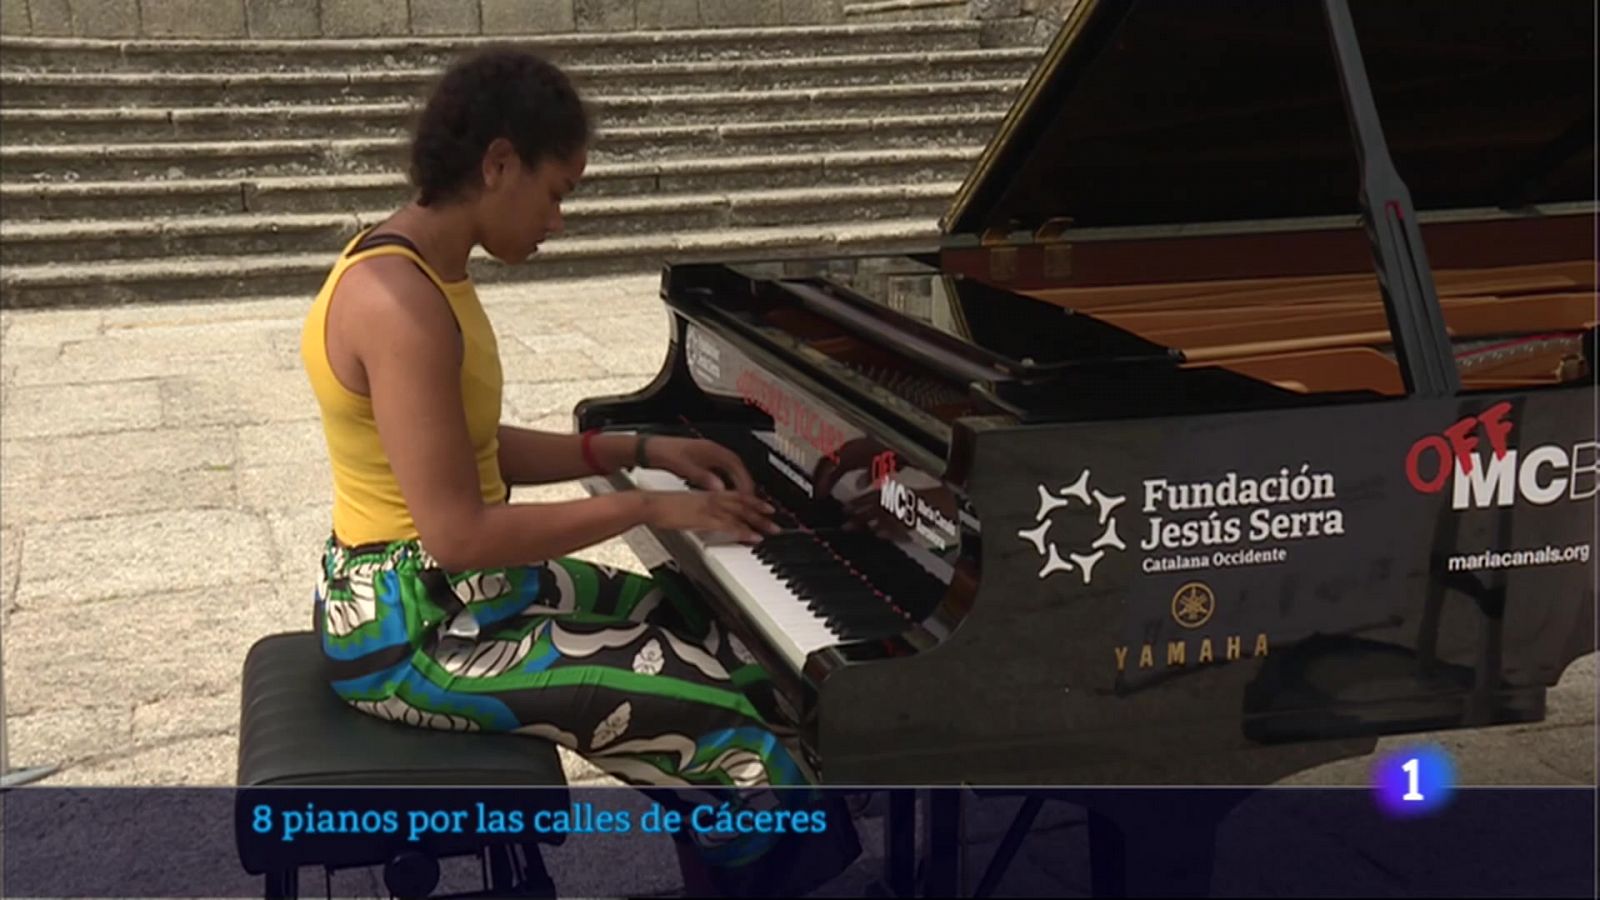 Ocho pianos por las calles de Cáceres